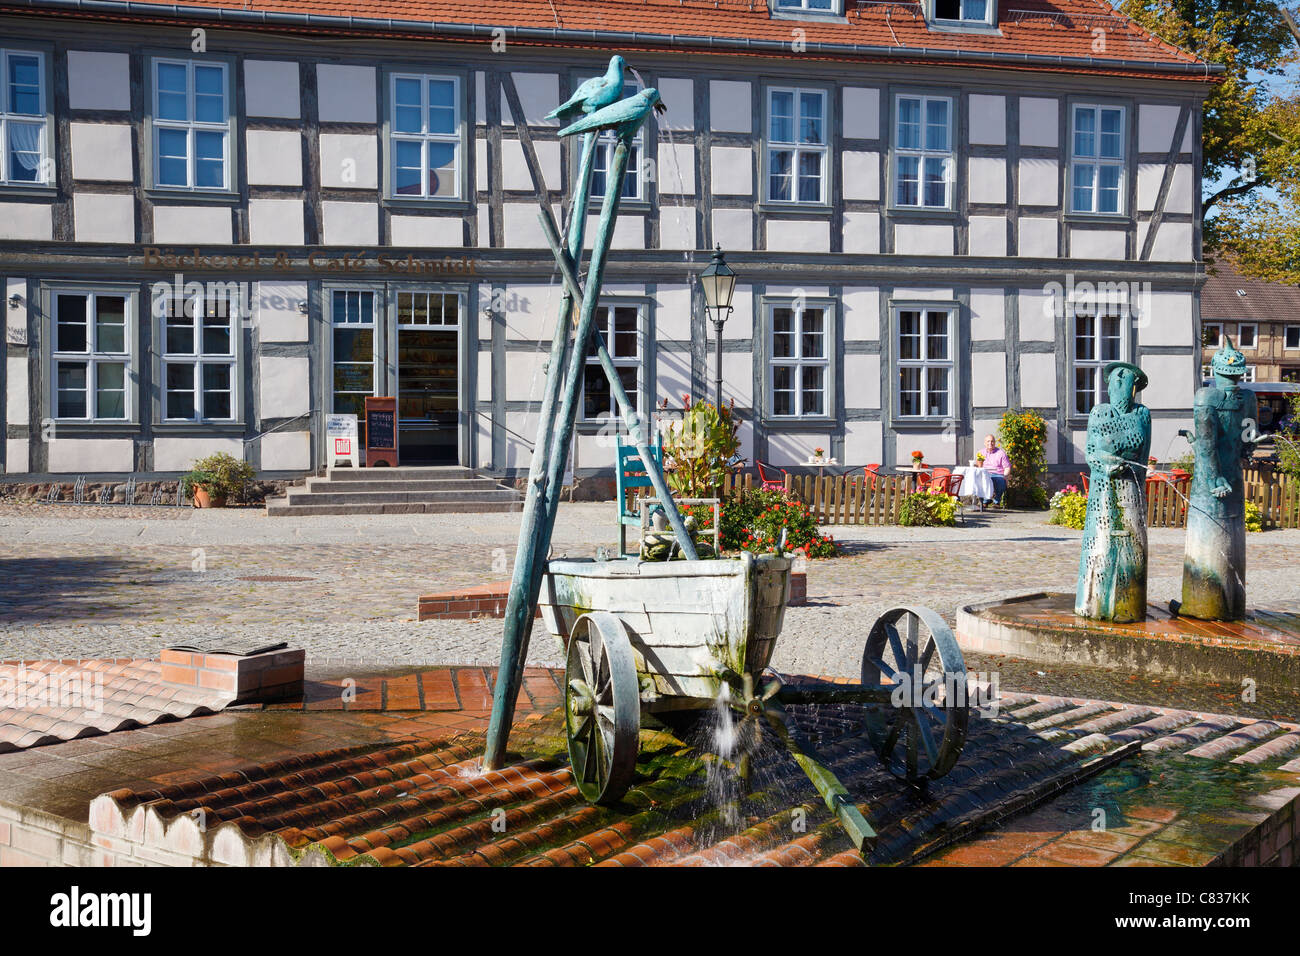 Luogo di mercato con fontane e sculture da Christian Uhlig, Angermuende, Brandeburgo, Germania Foto Stock